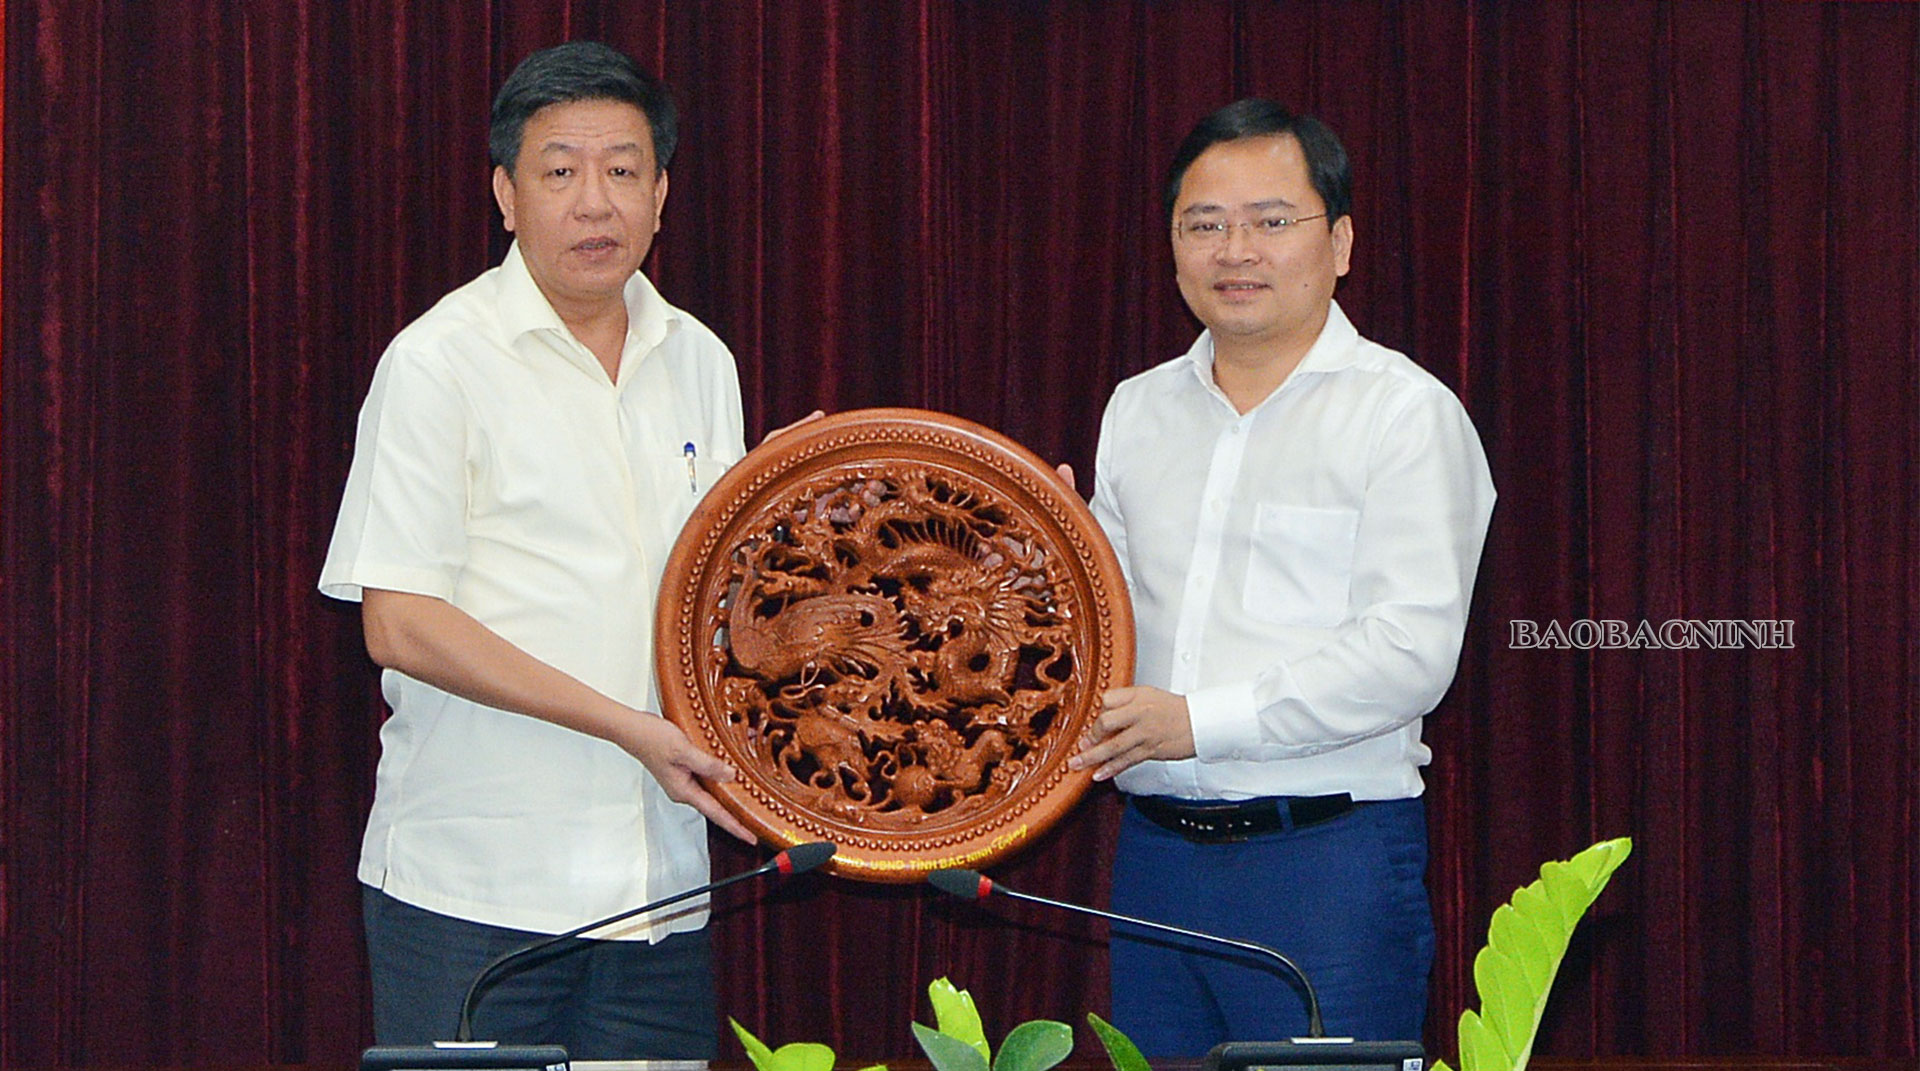 Hội nghị trao đổi về thỏa thuận, hợp tác giữa tỉnh Bắc Ninh và thành phố Hà Nội